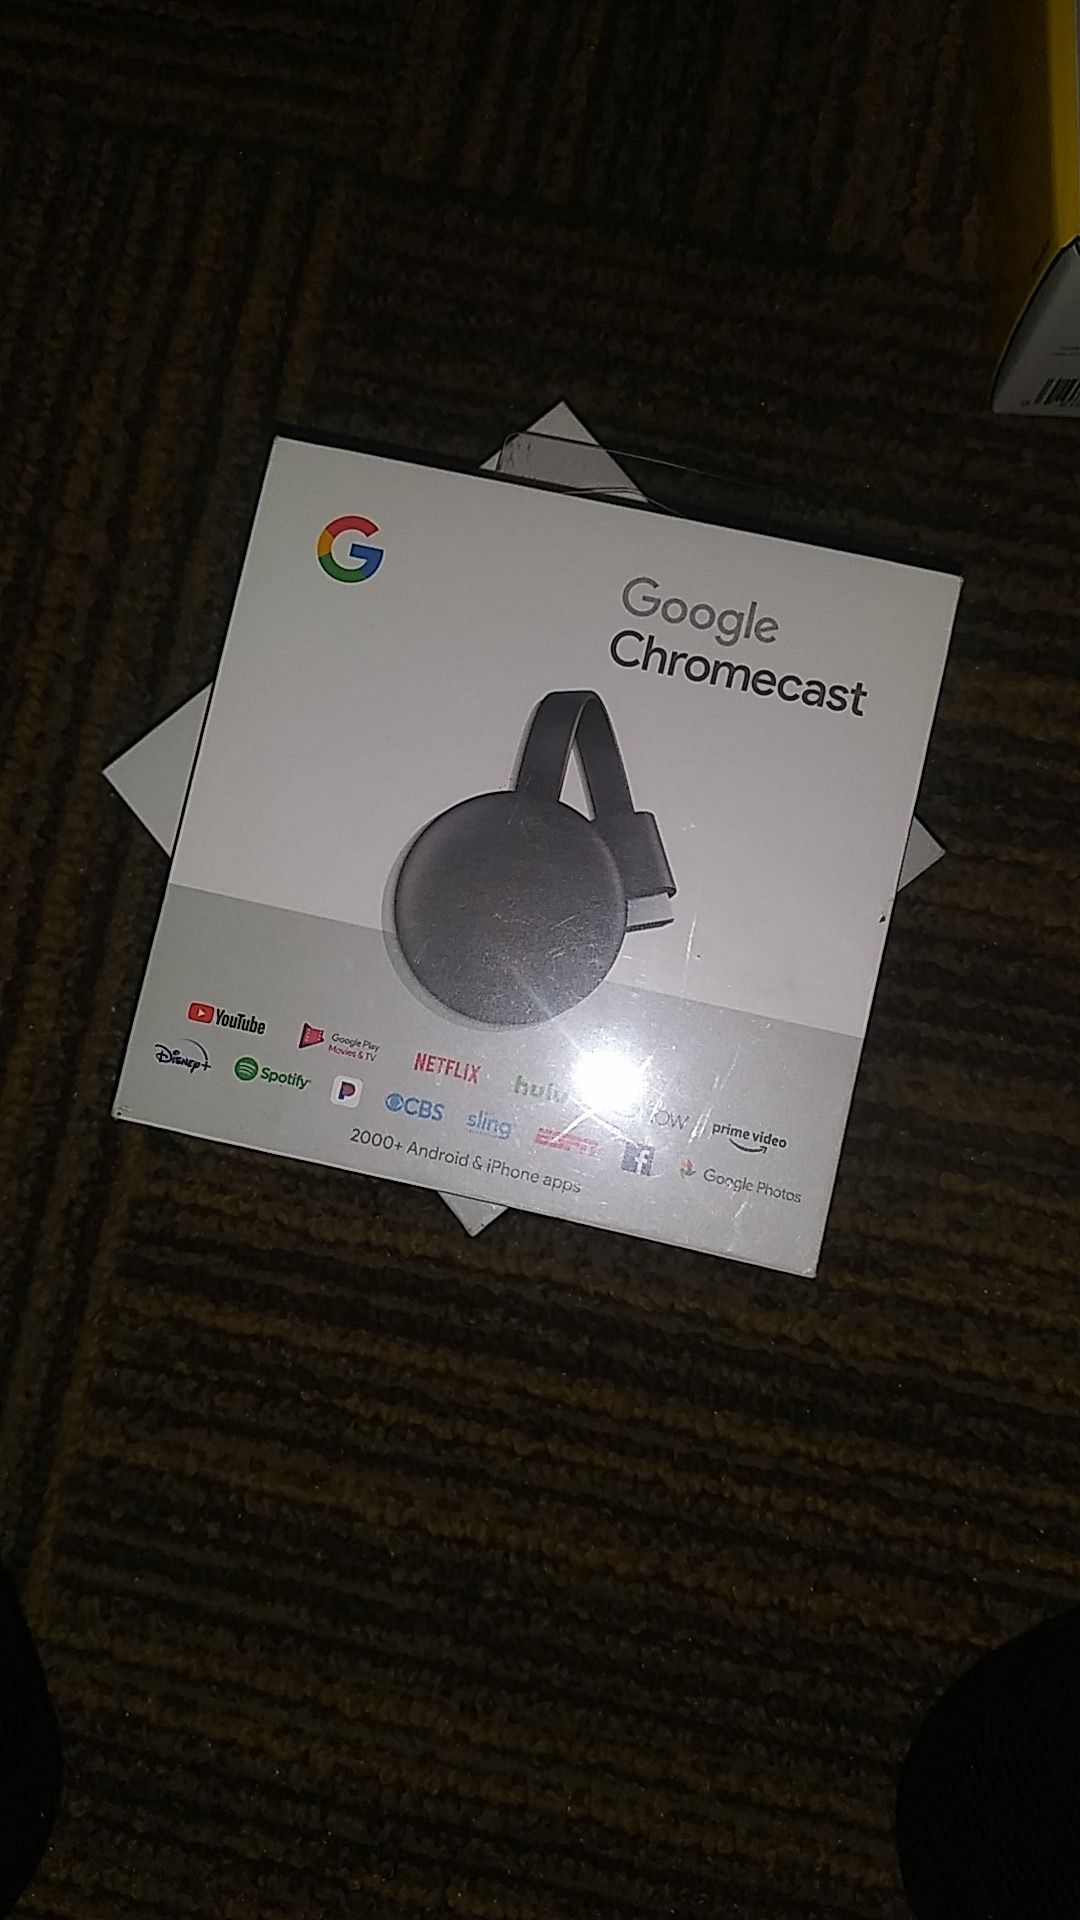 2 Chromecast Google product